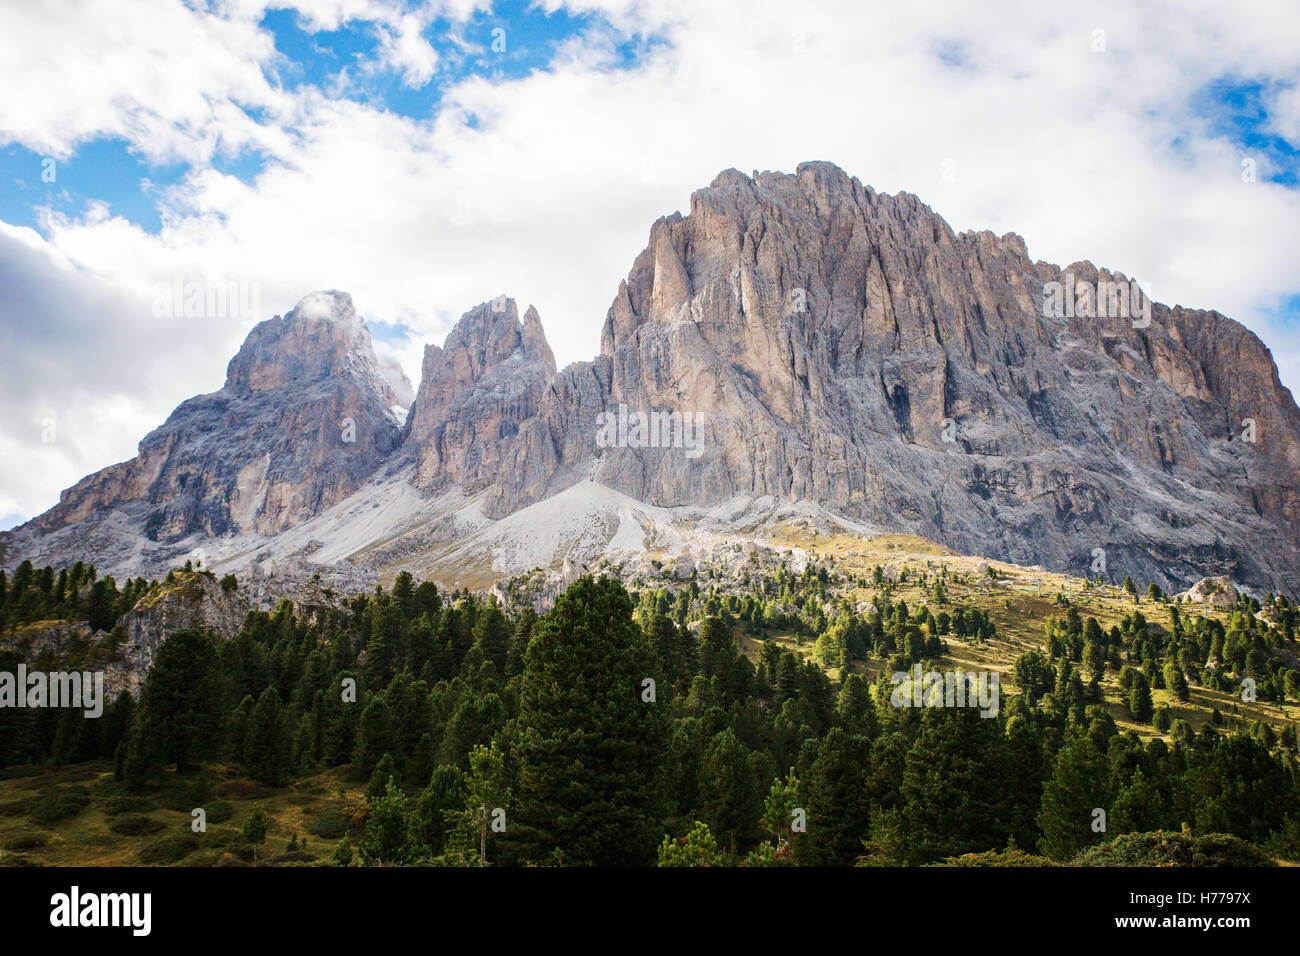 Dolomite mountains, val gardena, South Tyrol, Italy Stock Photo